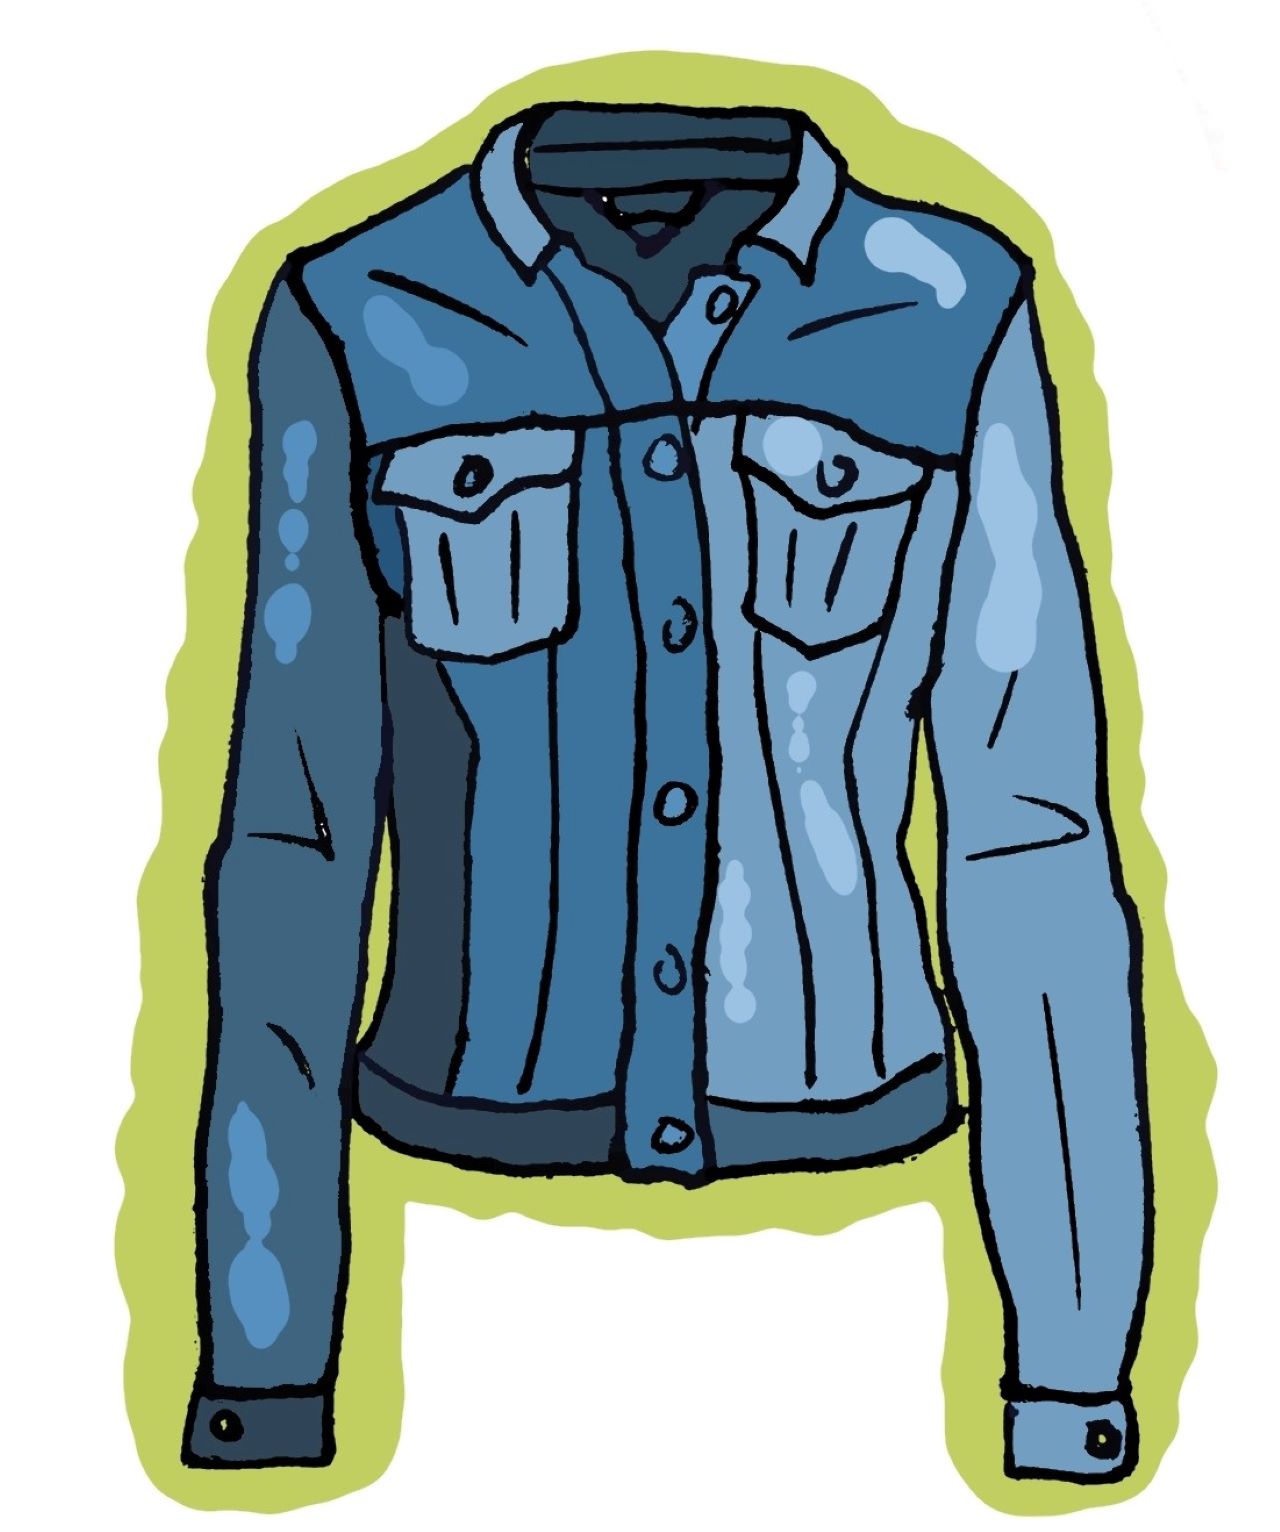 Ilustracijom je prikazana plava traper-jakna.